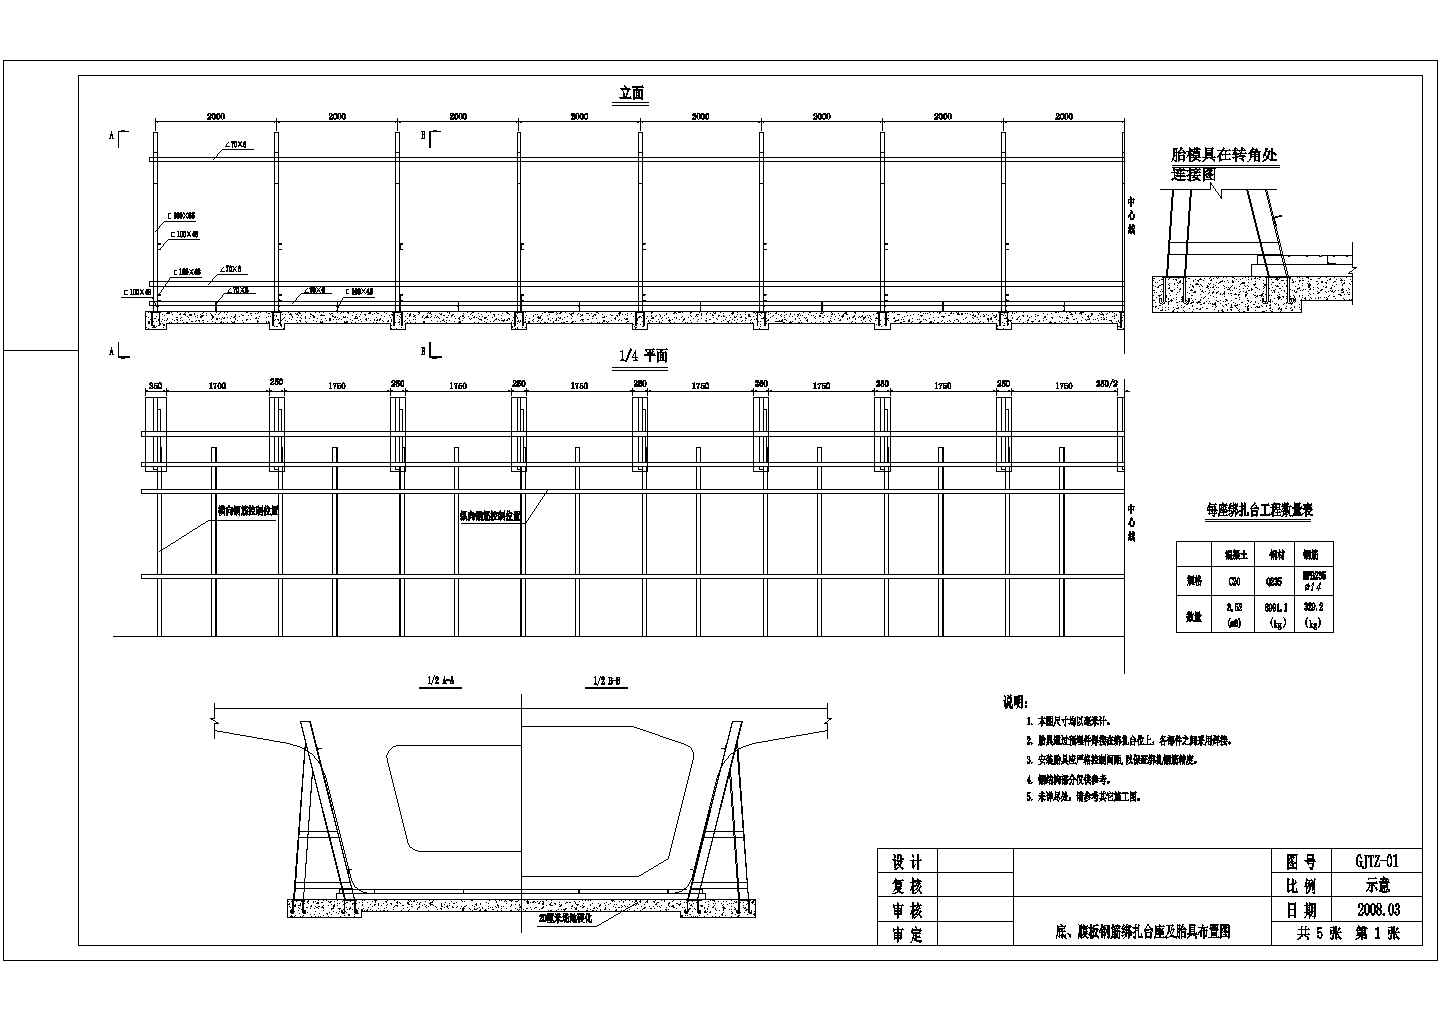 高速铁路某标段制梁场底、腹板钢筋绑扎台座节点详图设计